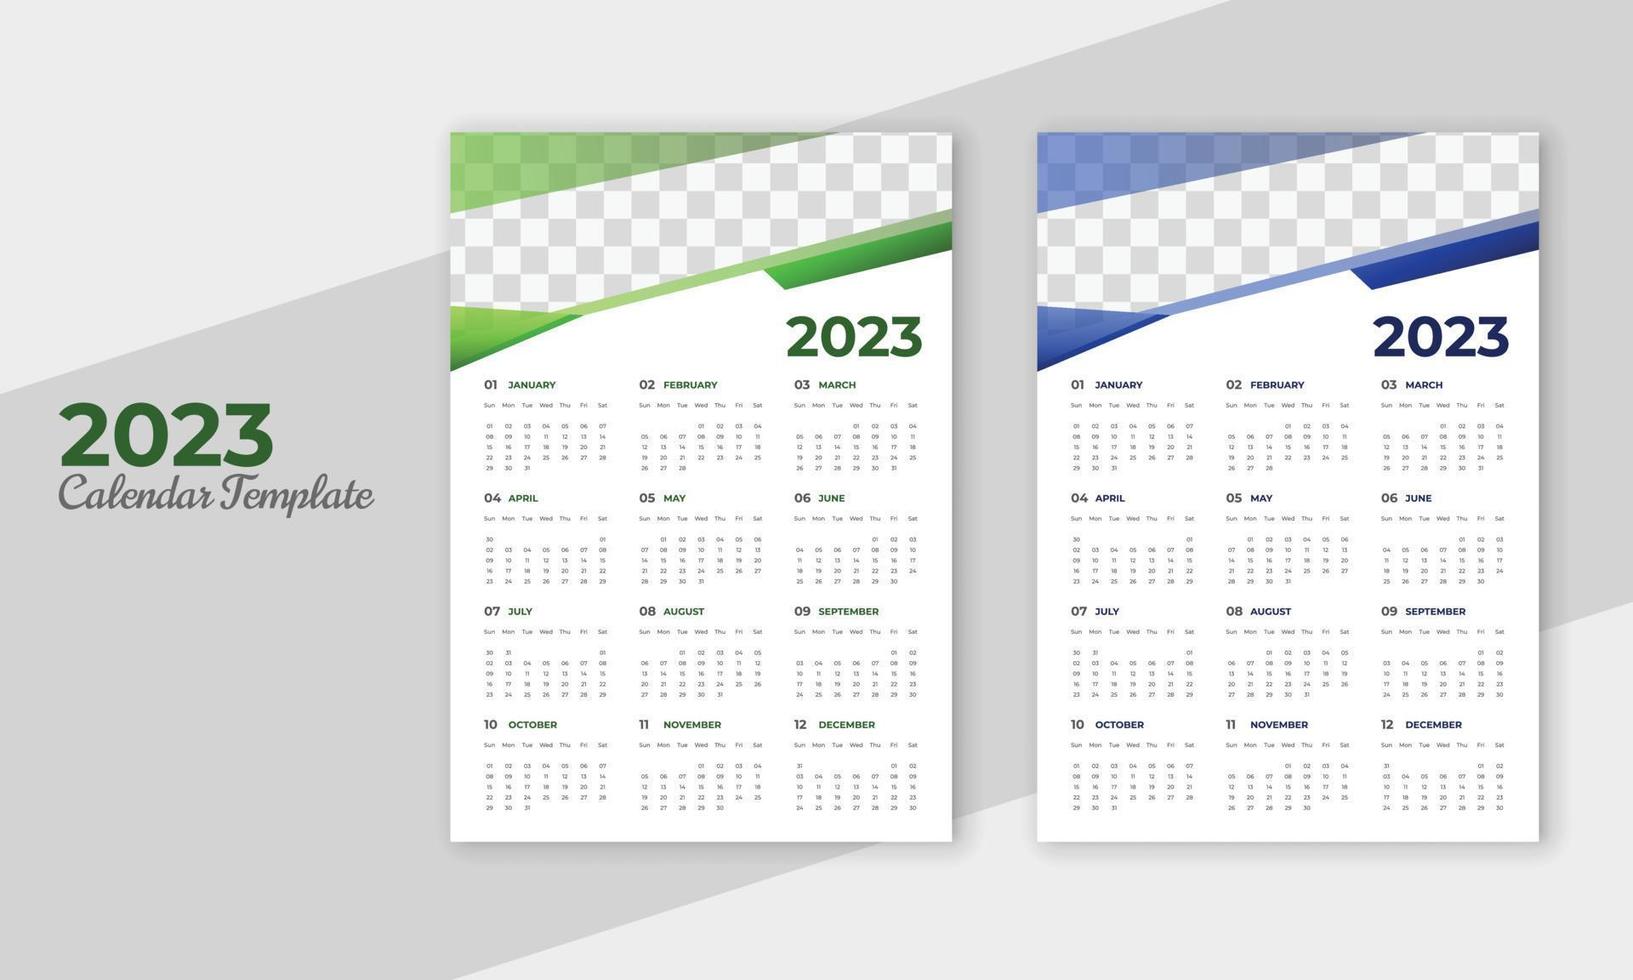 diseño de calendario de año nuevo 2023 moderno, colorido y único vector